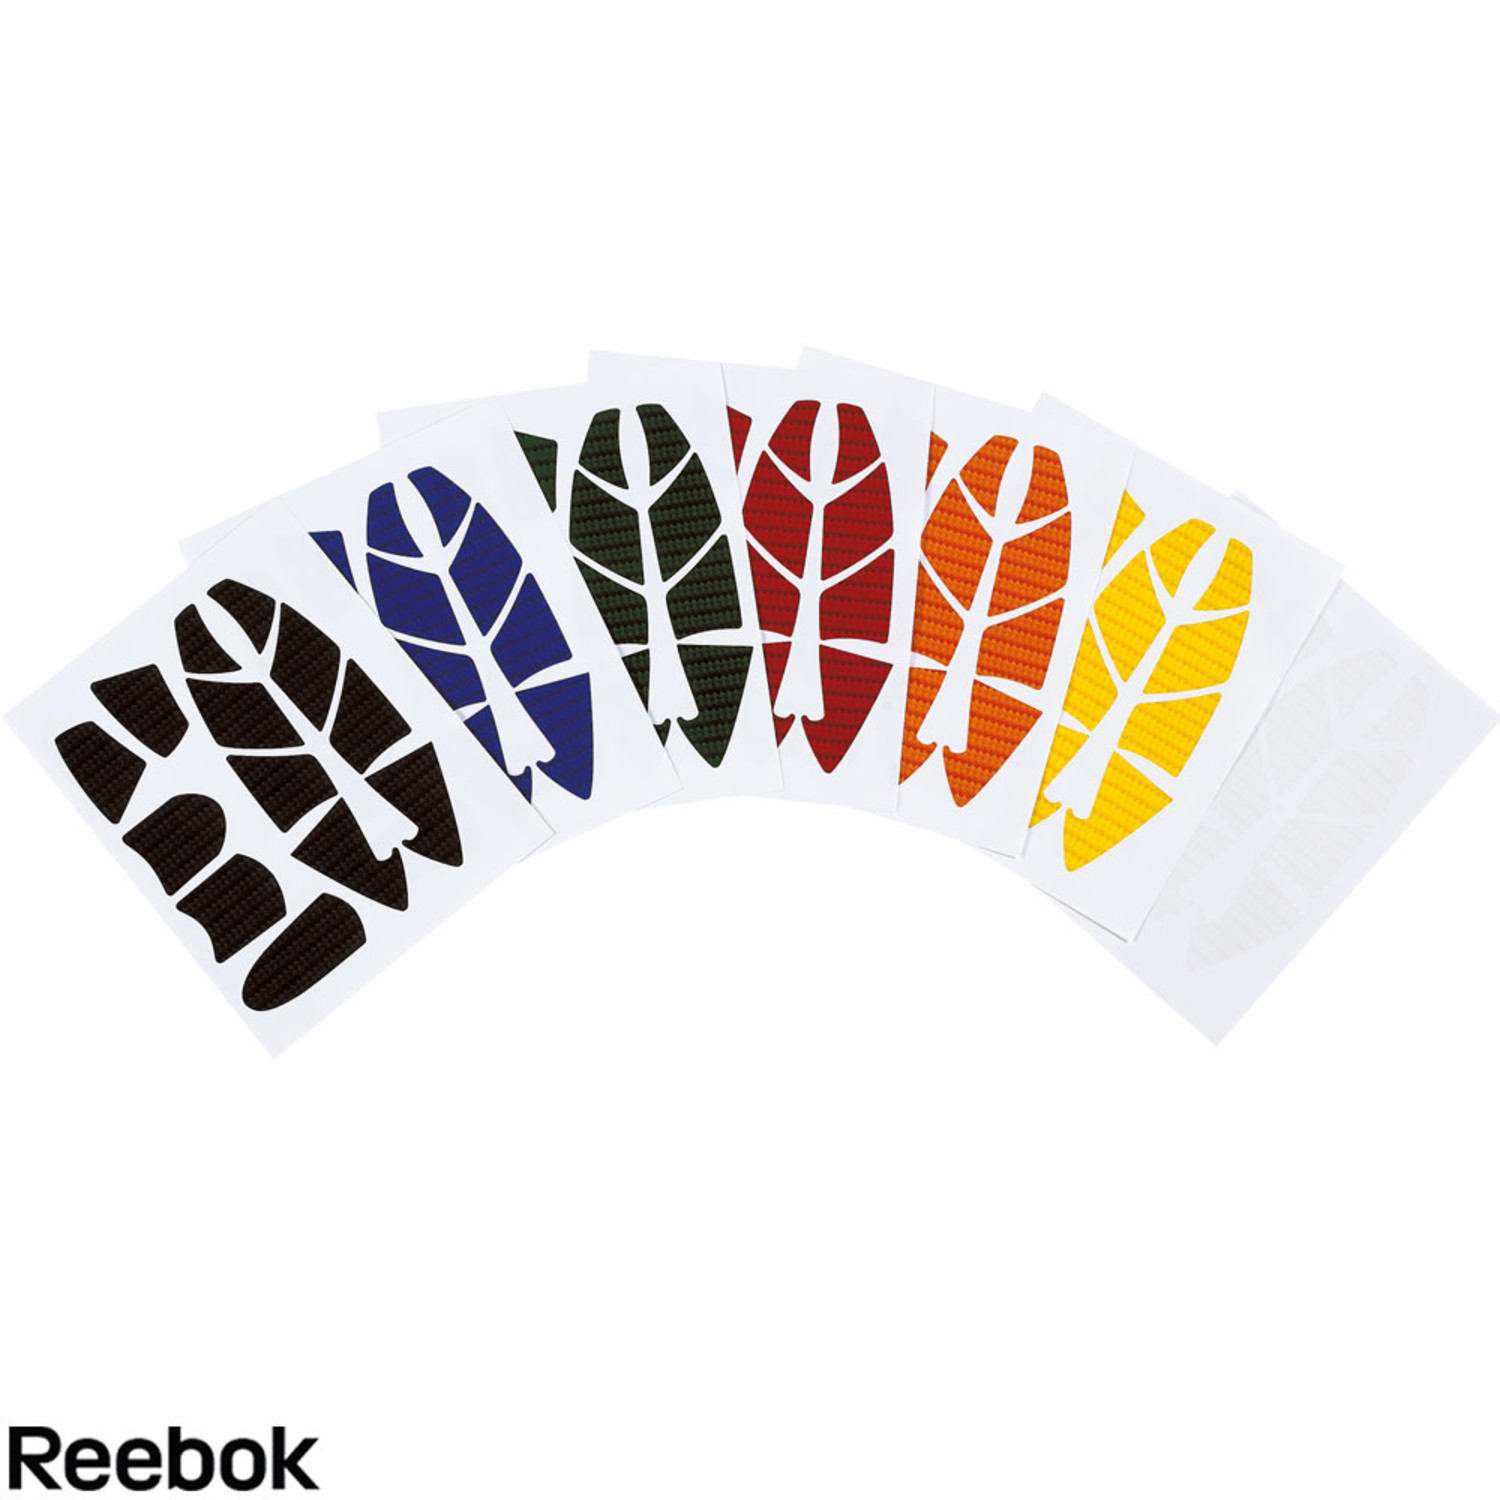 Tổng hợp hơn 75+ reebok sticker dễ làm nhất - Co-Created English